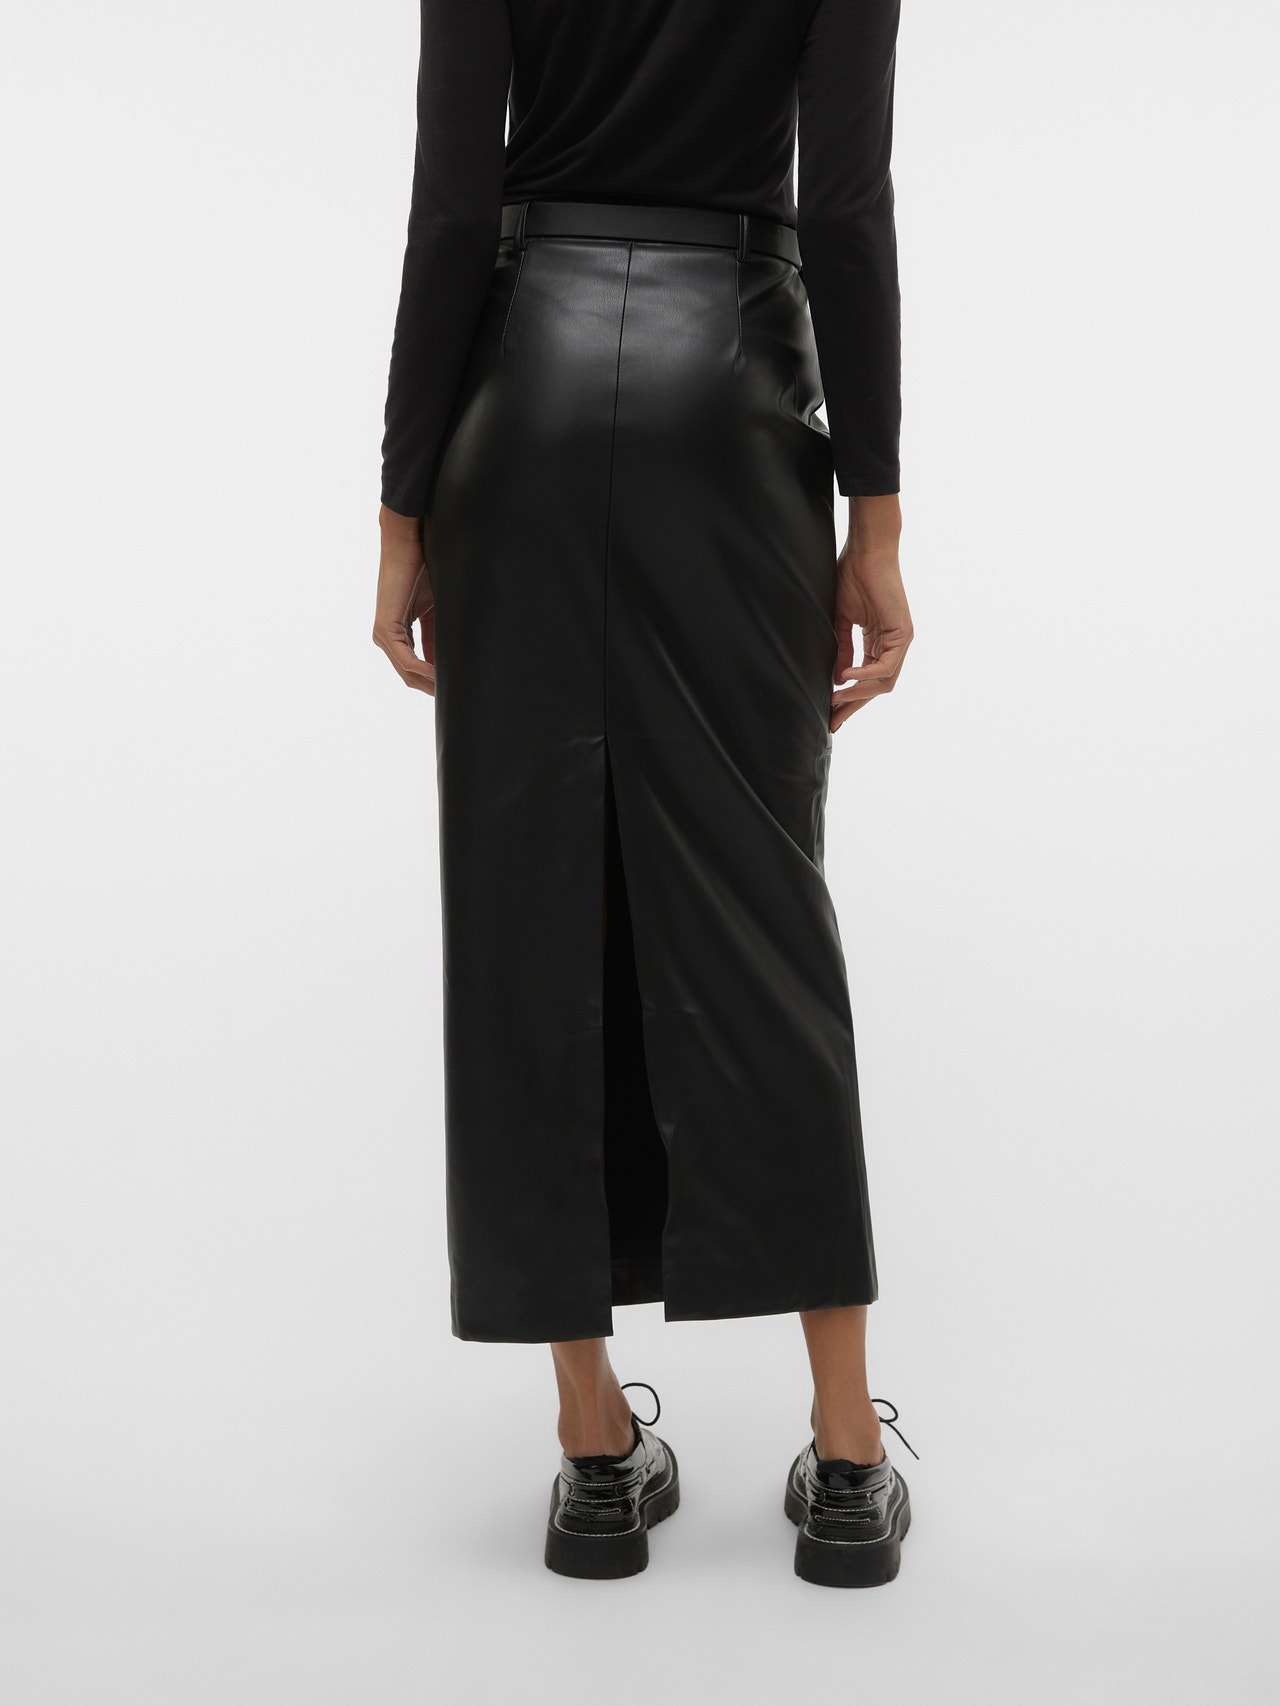 Vero Moda VMSIGNA Long Skirt -Black - 10310688